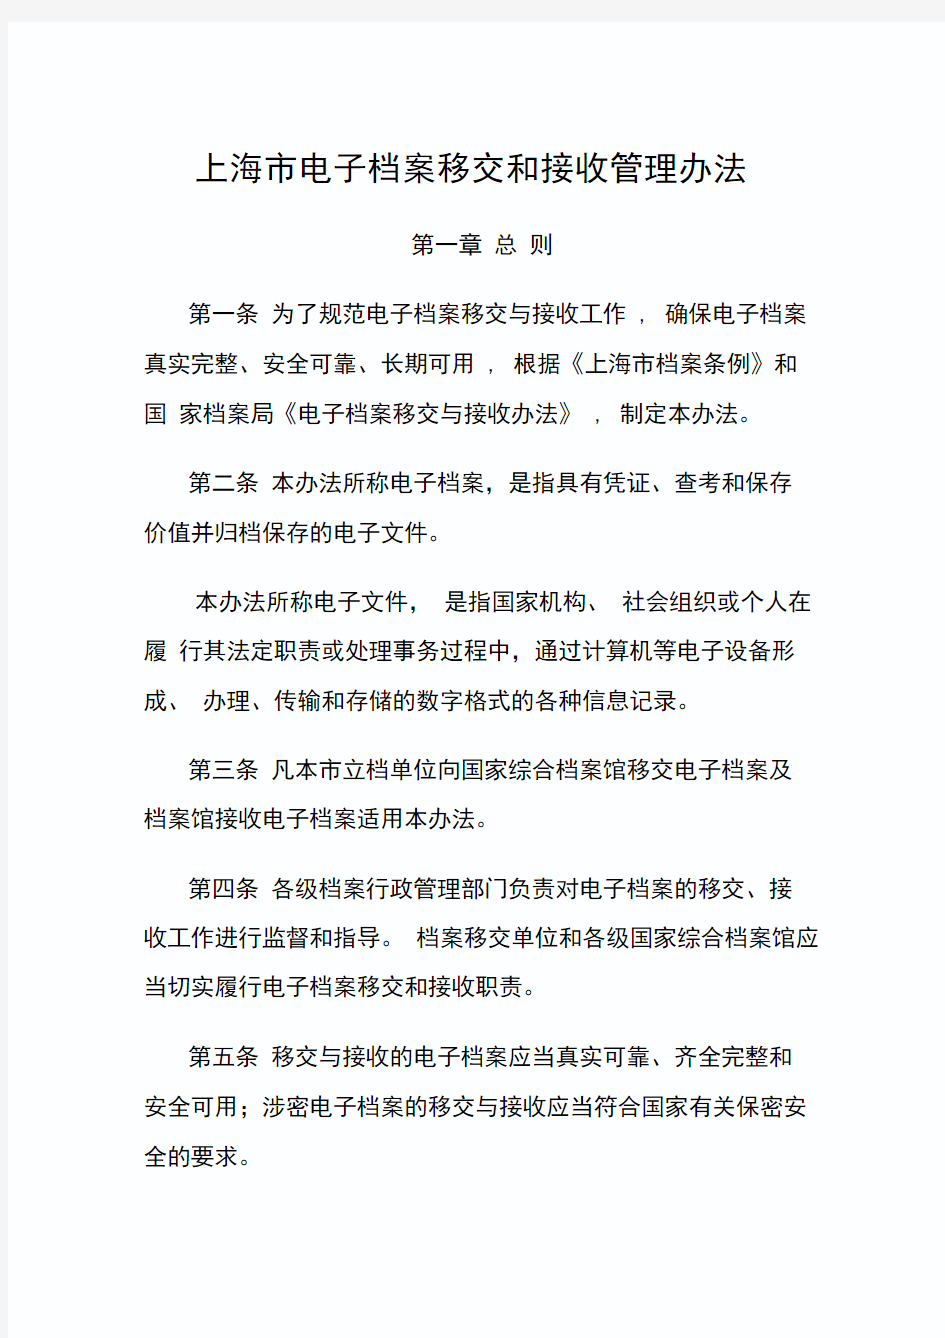 上海市电子档案移交和接收管理办法